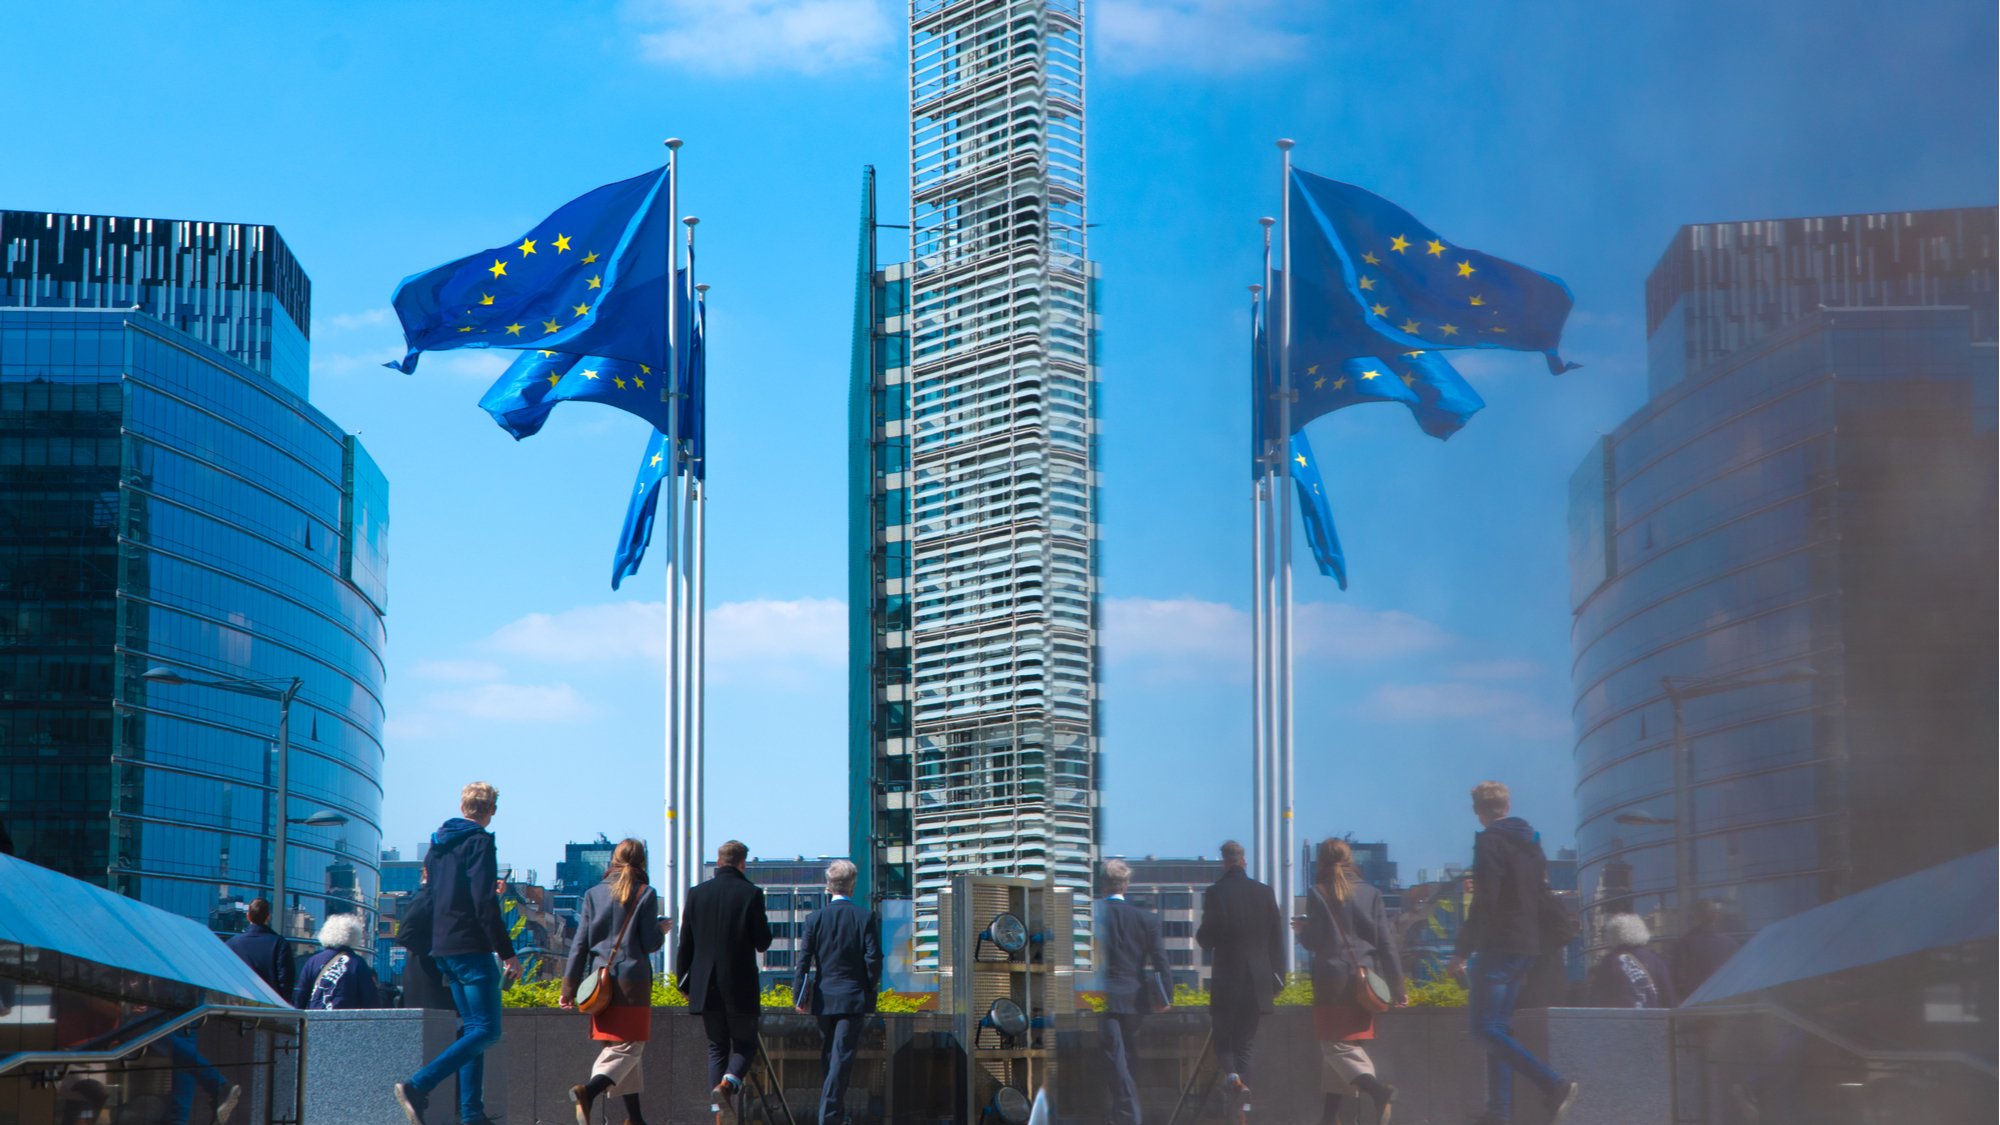 Siedziba Komisji Europejskiej, Bruksela. Fot. Meg Jakiel / Shutterstock.com